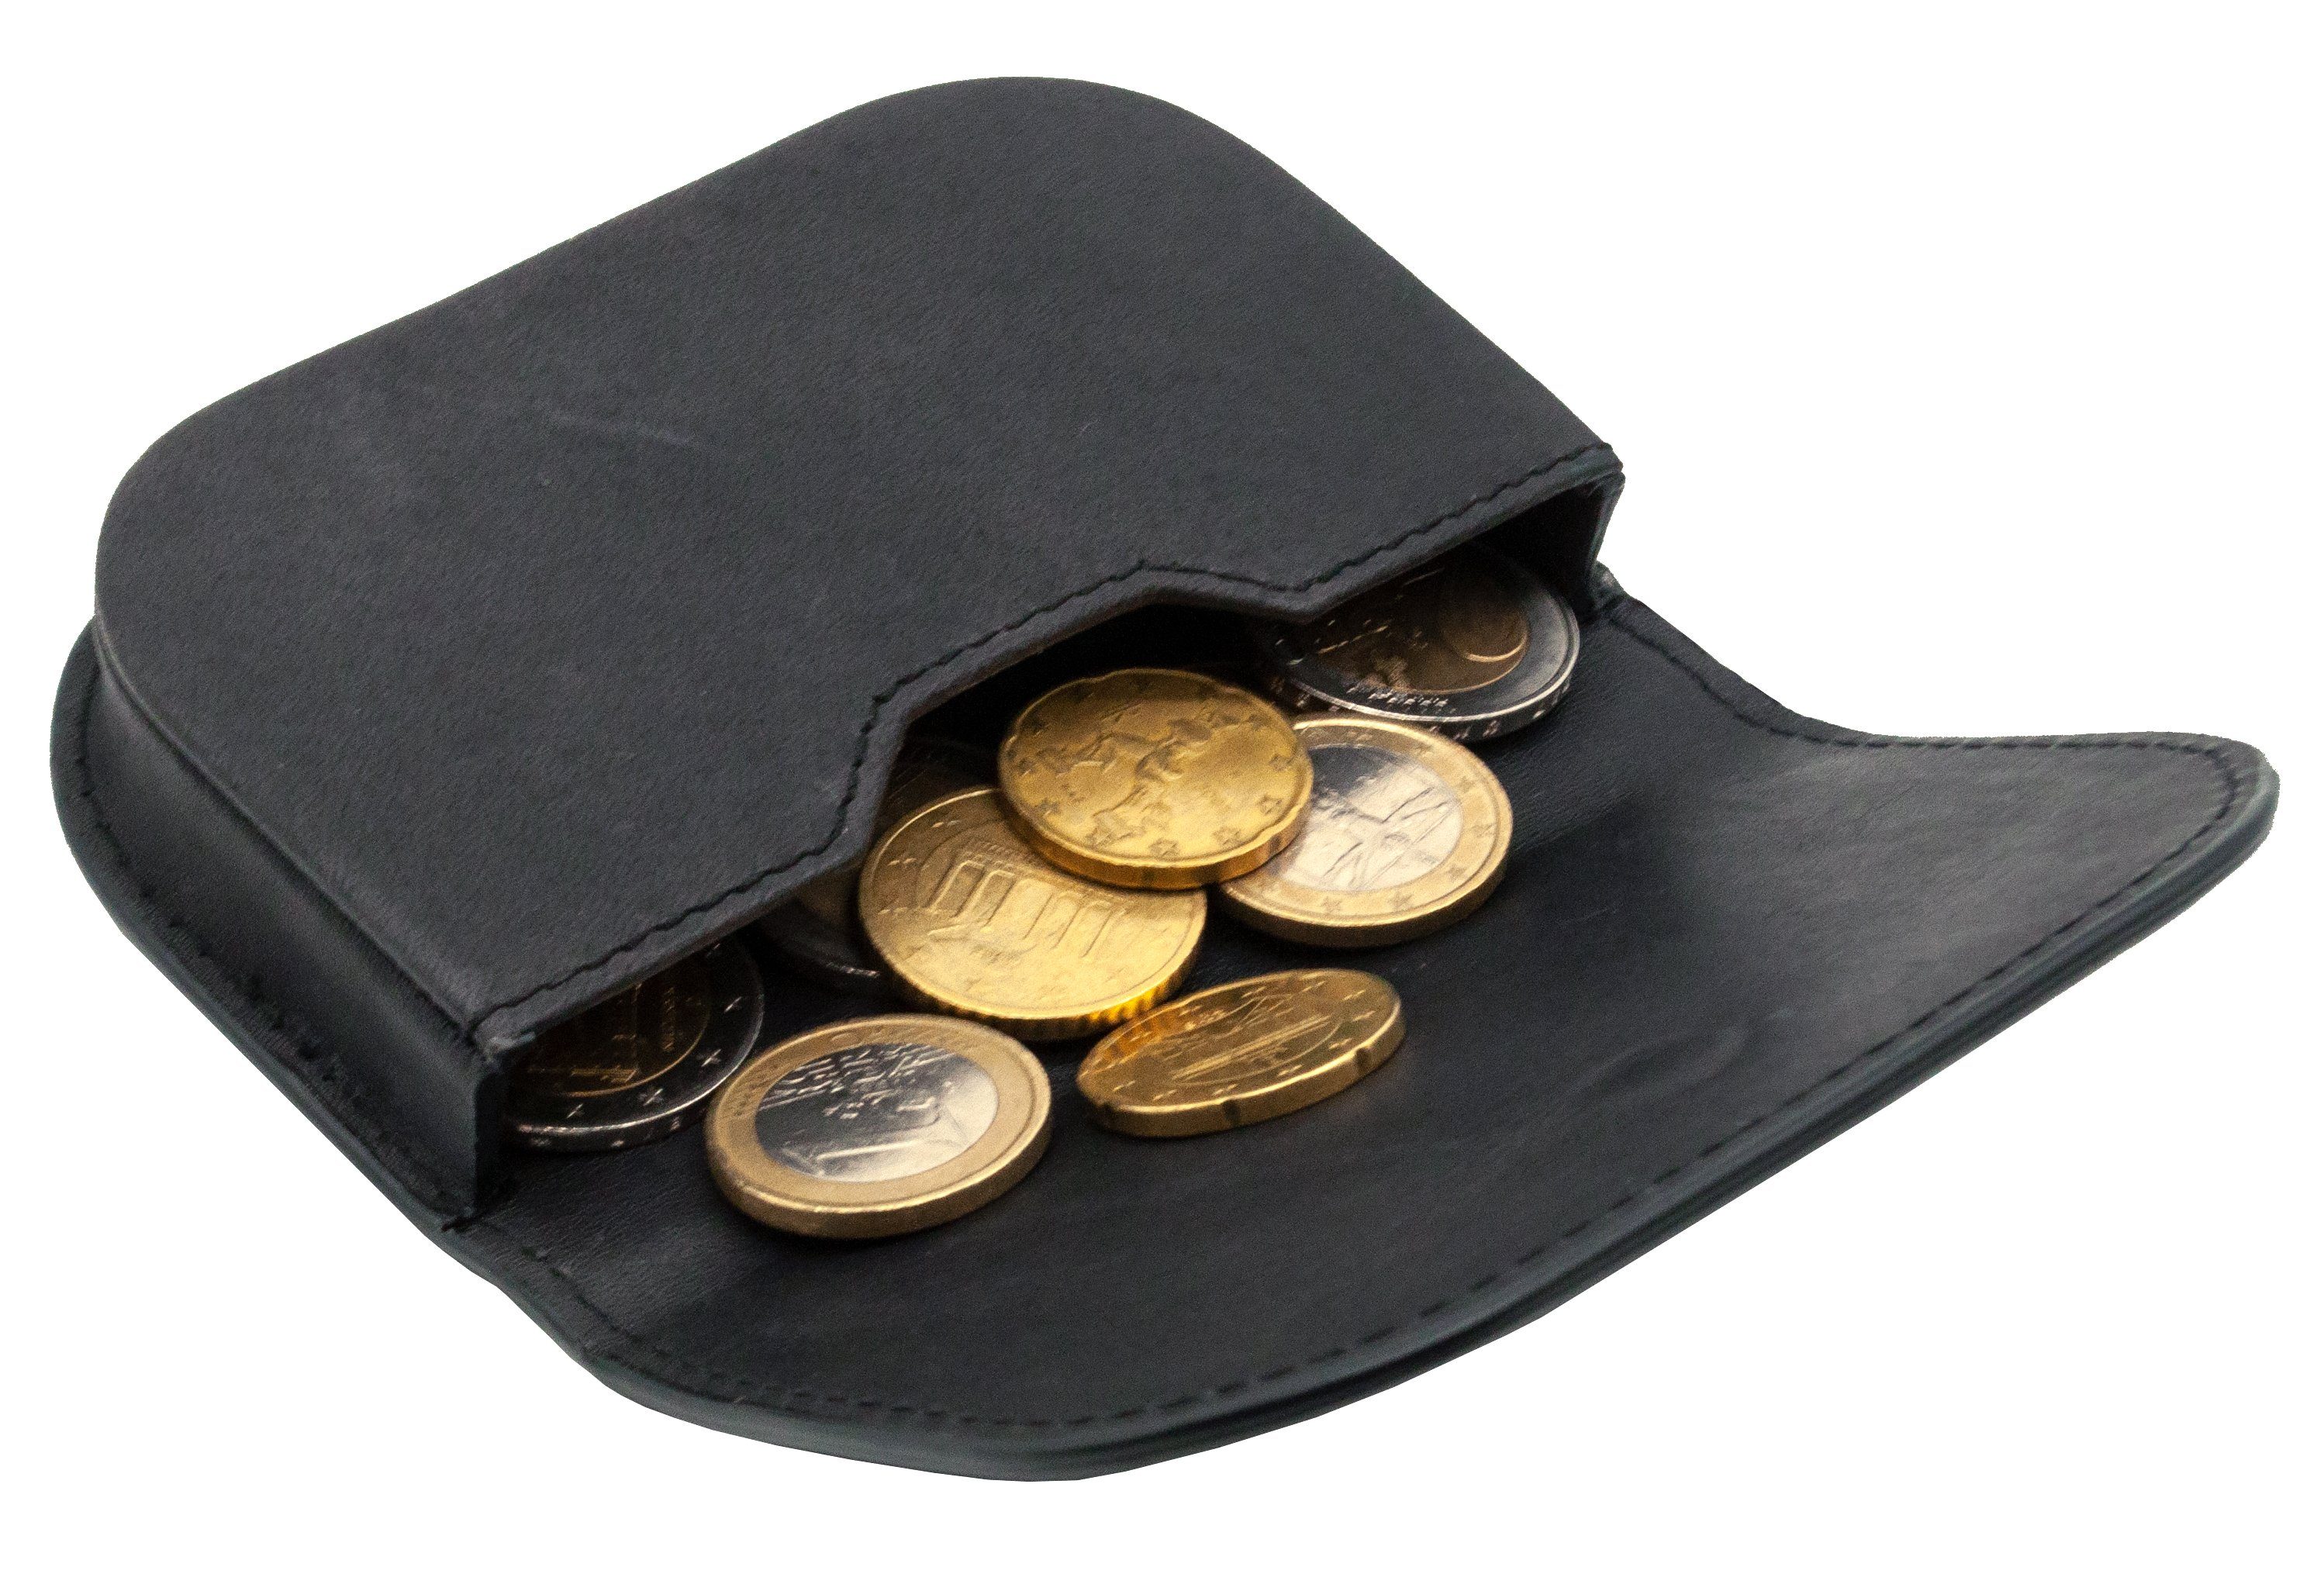 Benthill Mini Geldbörse Echt Leder Kleingeldschütte Münzbörse Münzfach Münzen, mit Kleingeldbörse Kartenfächer für